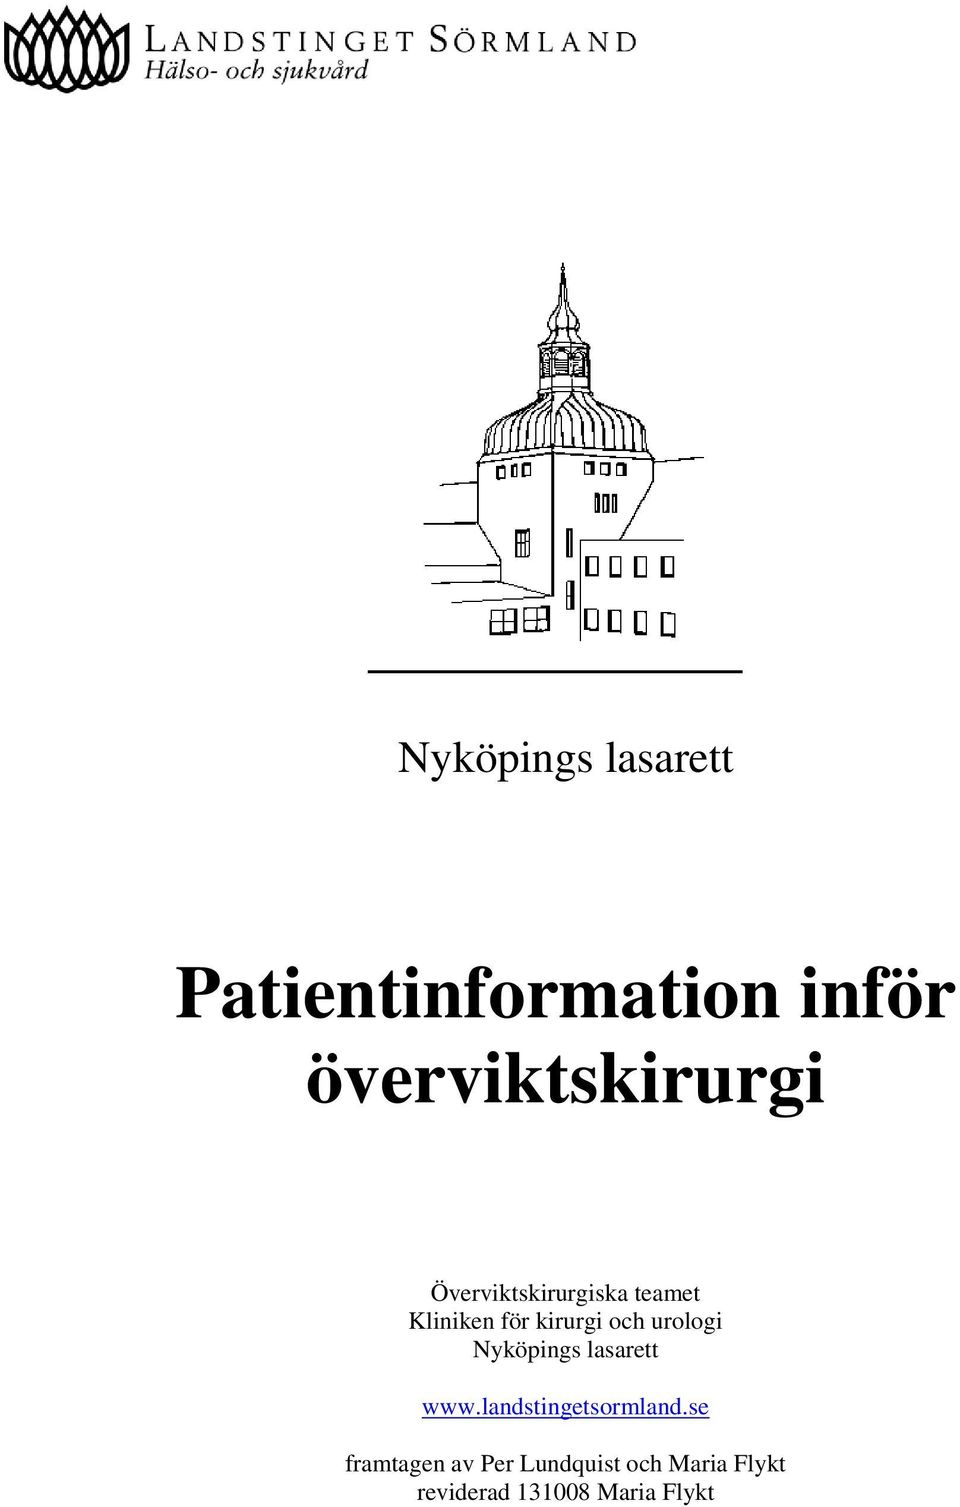 kirurgi och urologi Nyköpings lasarett www.